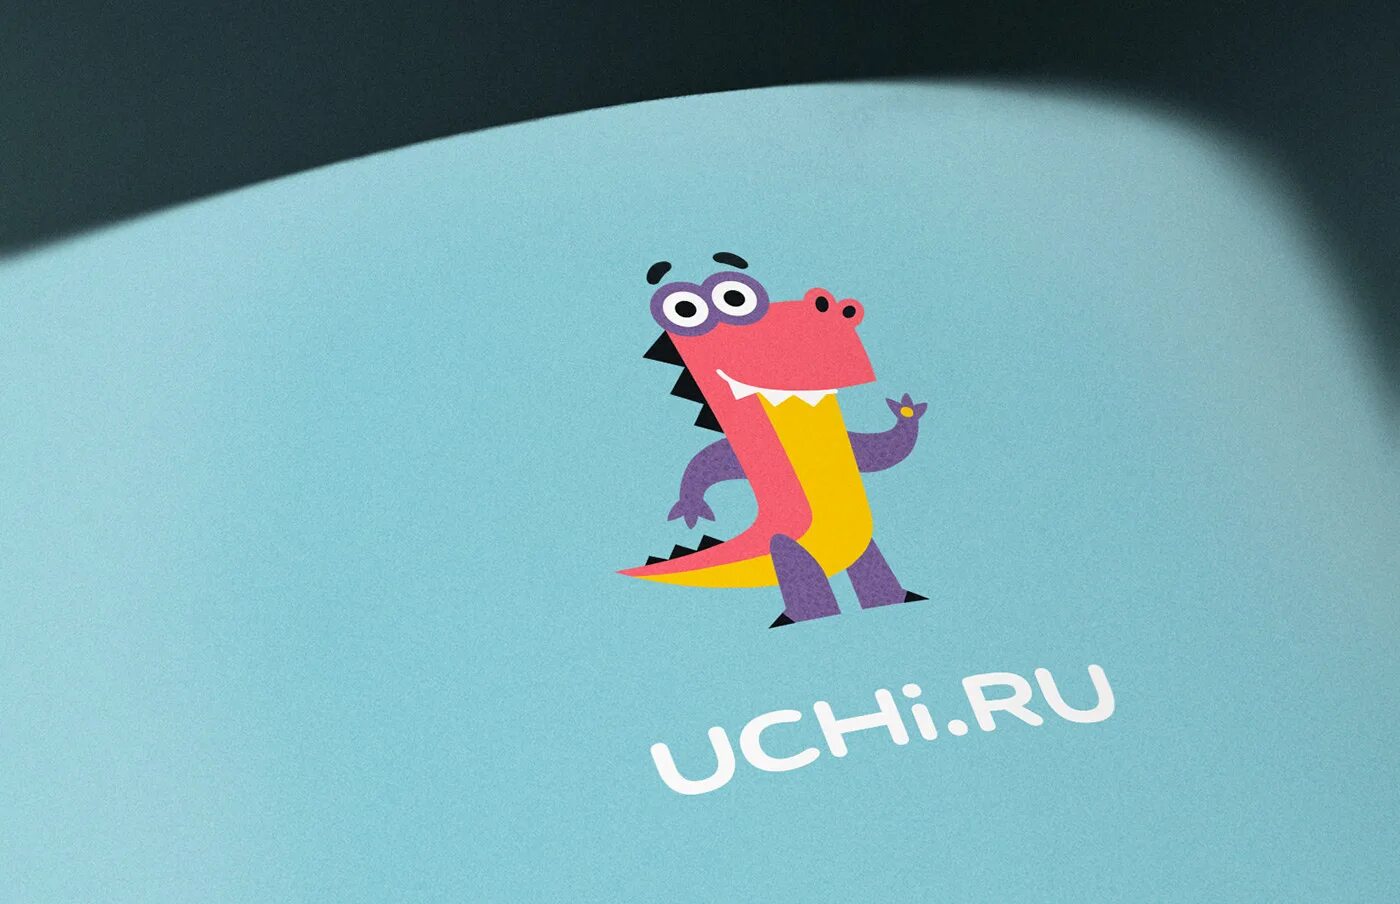 Https uchi nok. Учи ру. Логотип Uchi.ru. Учи ру логотип. Картинка учи ру динозавр.